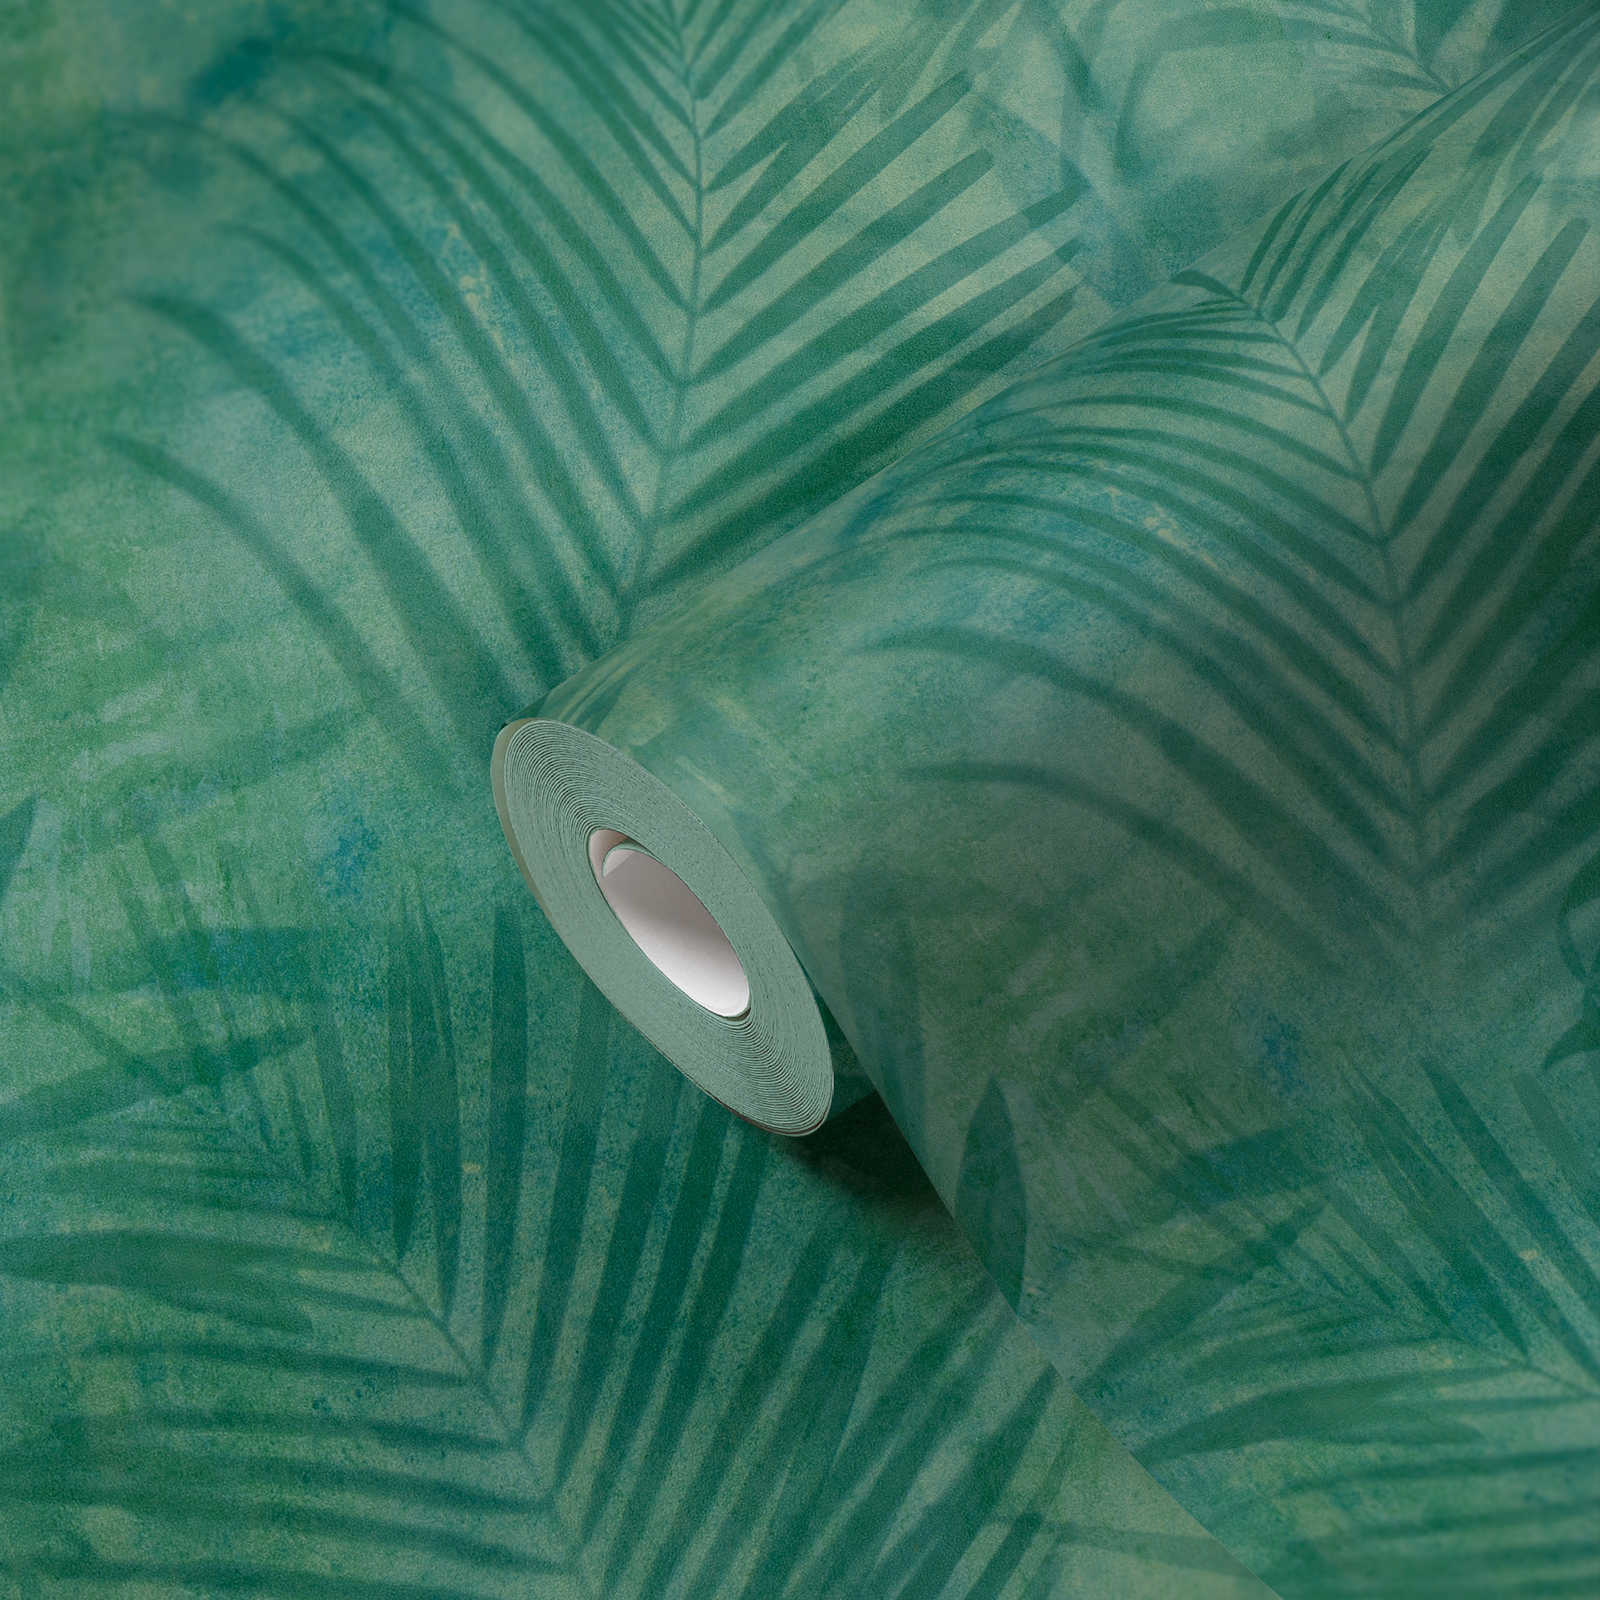             Papier peint motif palmier en lin - vert, bleu, jaune
        